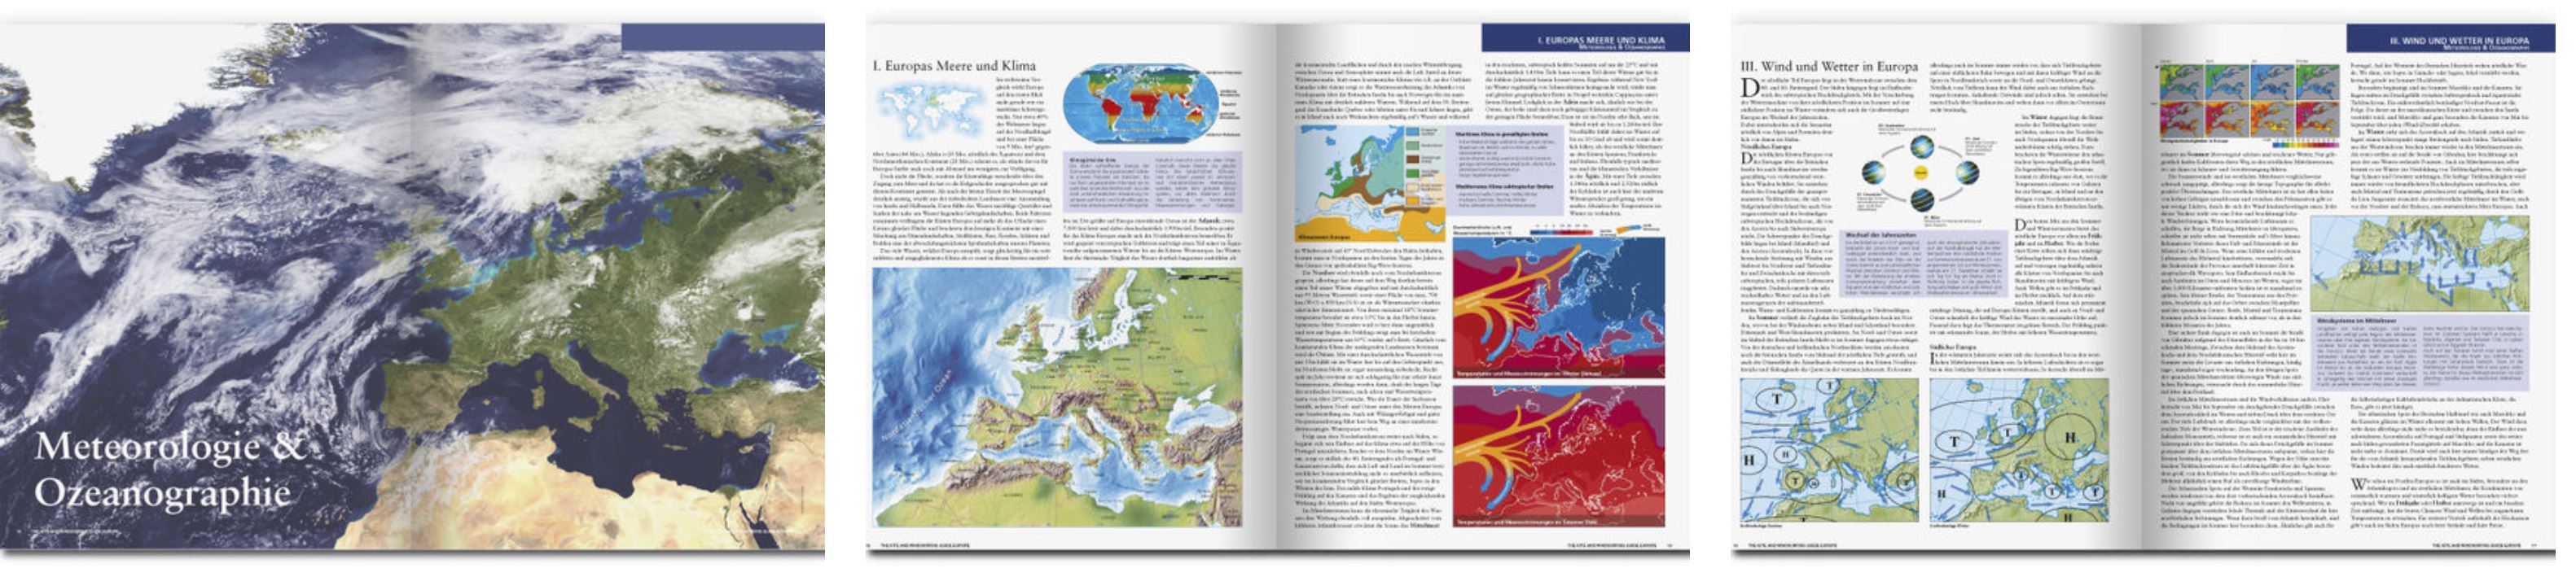 Kite und Windsurf Guide, Europa, Vorschau